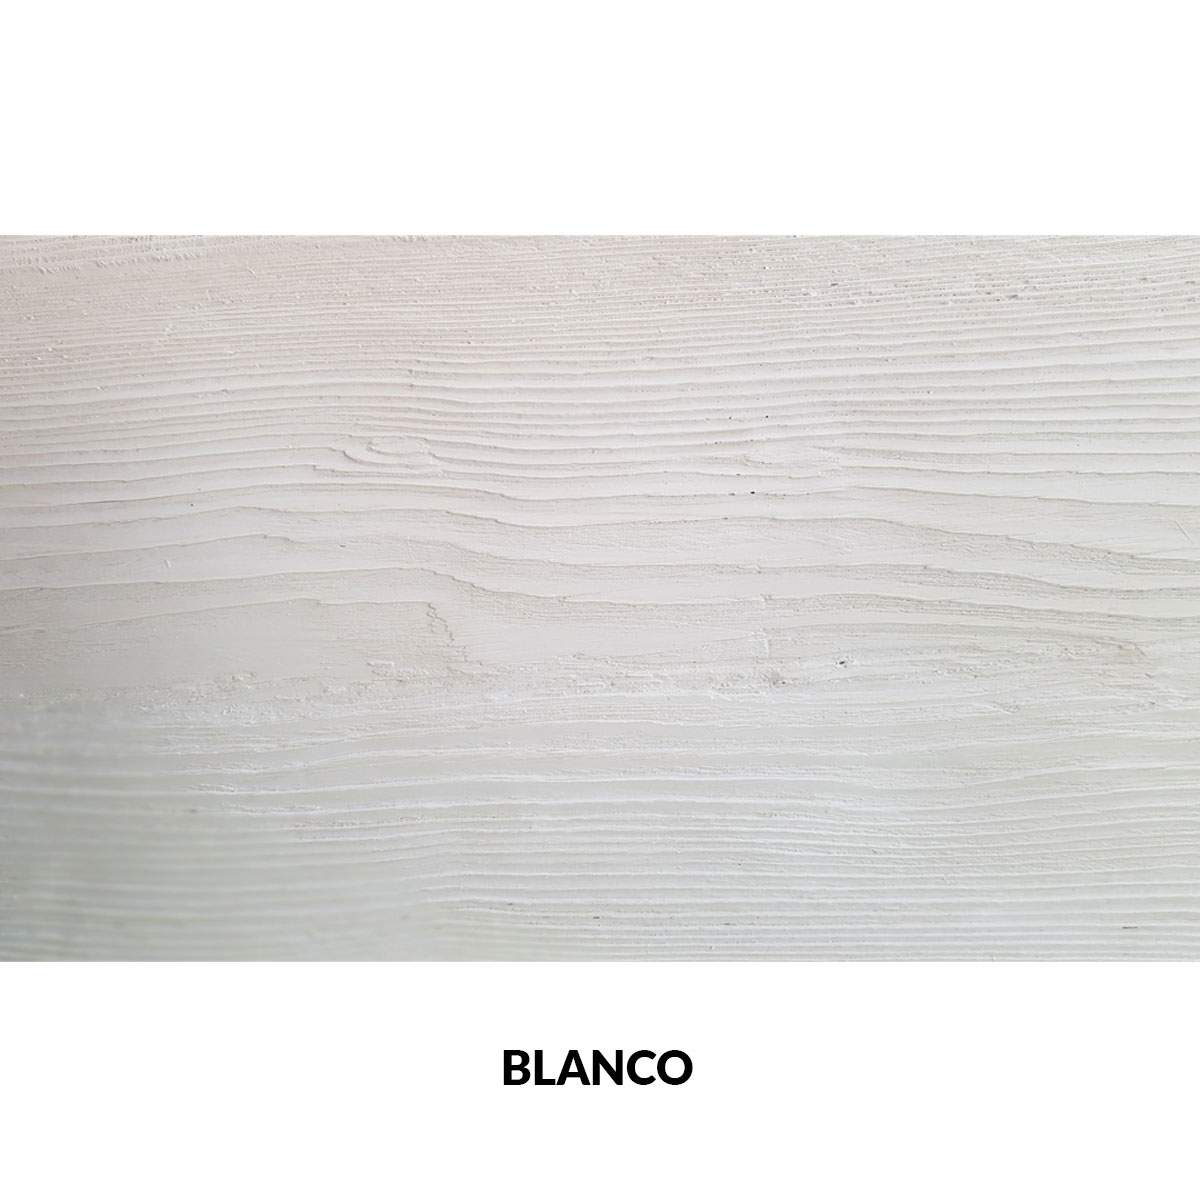 Panel rústico de seis lamas imitación madera de 300x62cm blanco